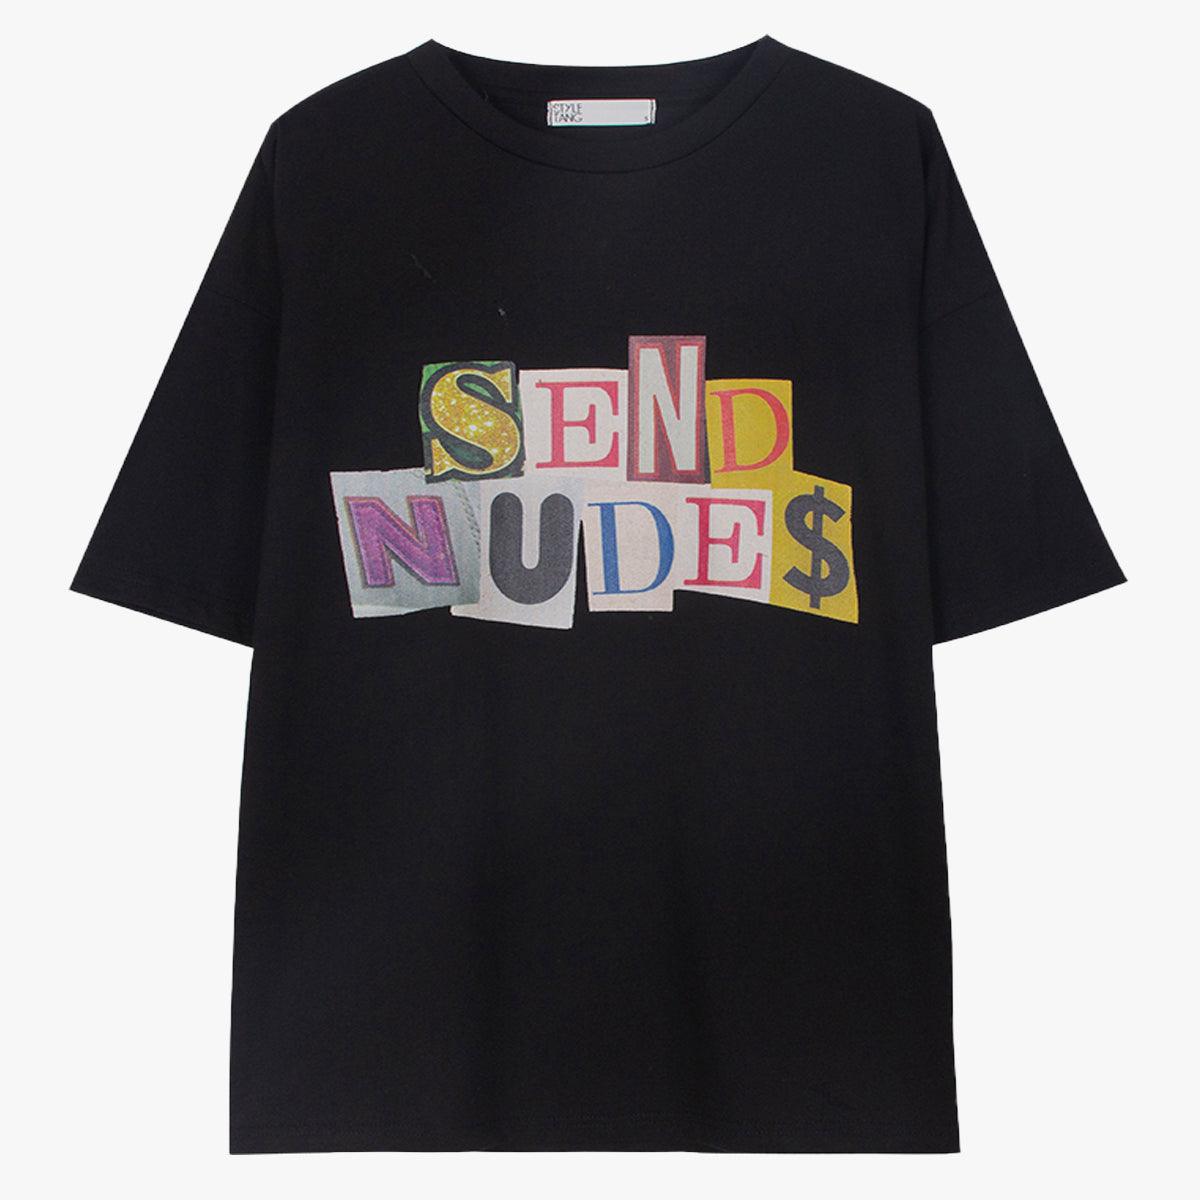 Send Nudes T-Shirt - Aesthetic Clothes Shop